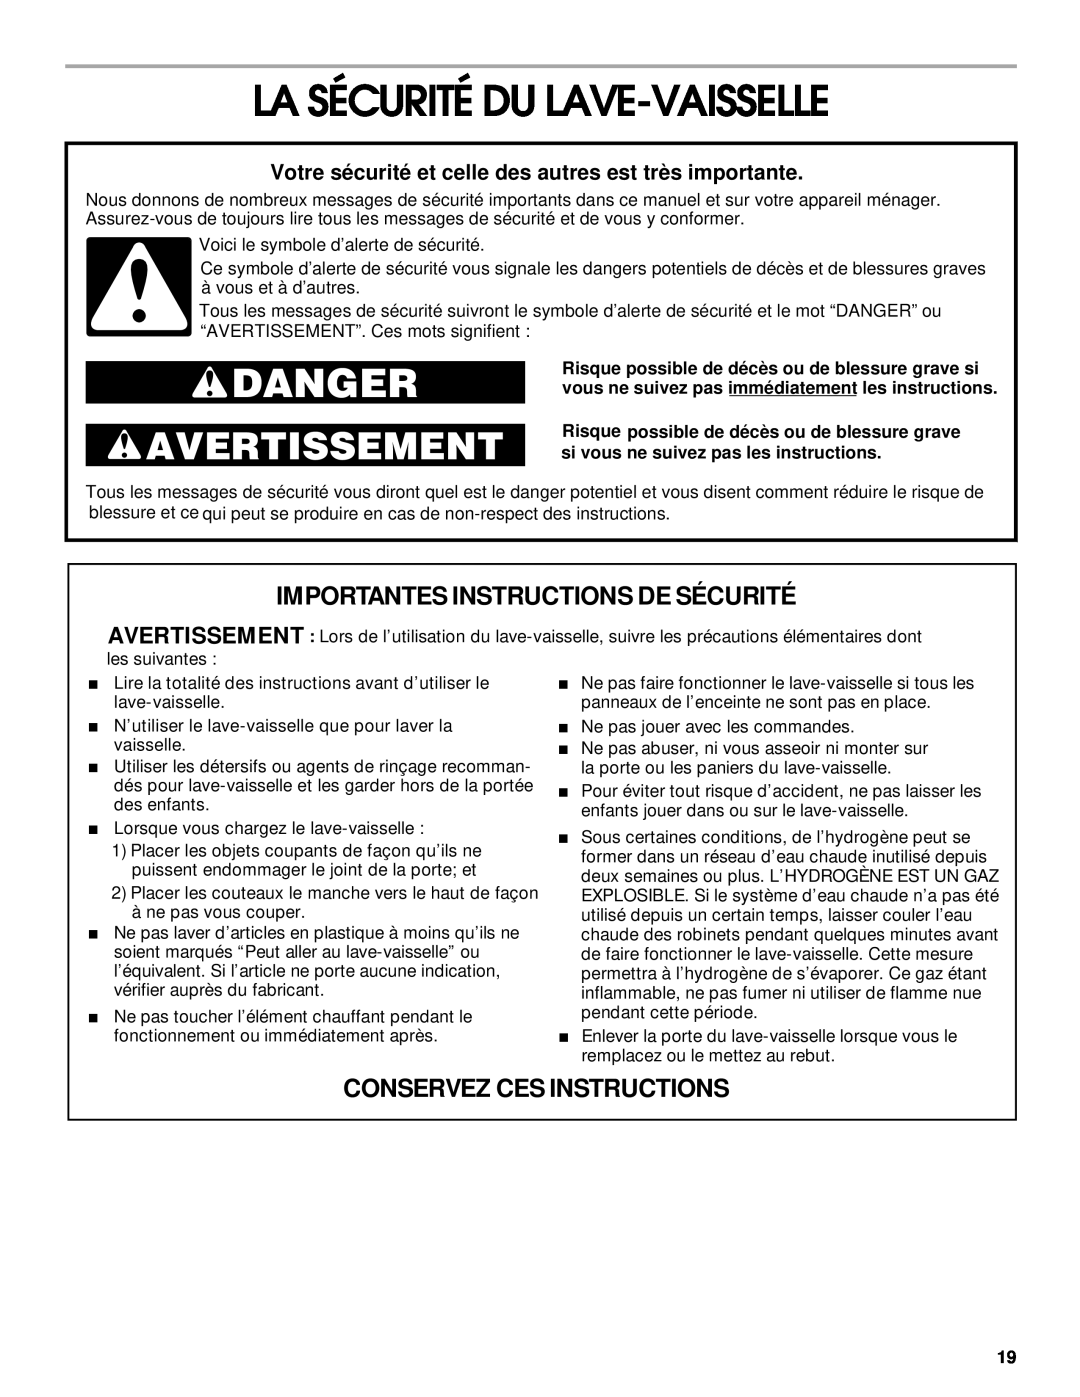 Roper RUD3000 La Sécurité Du Lave-Vaisselle, Importantes Instructions De Sécurité, Conservez Ces Instructions, Danger 